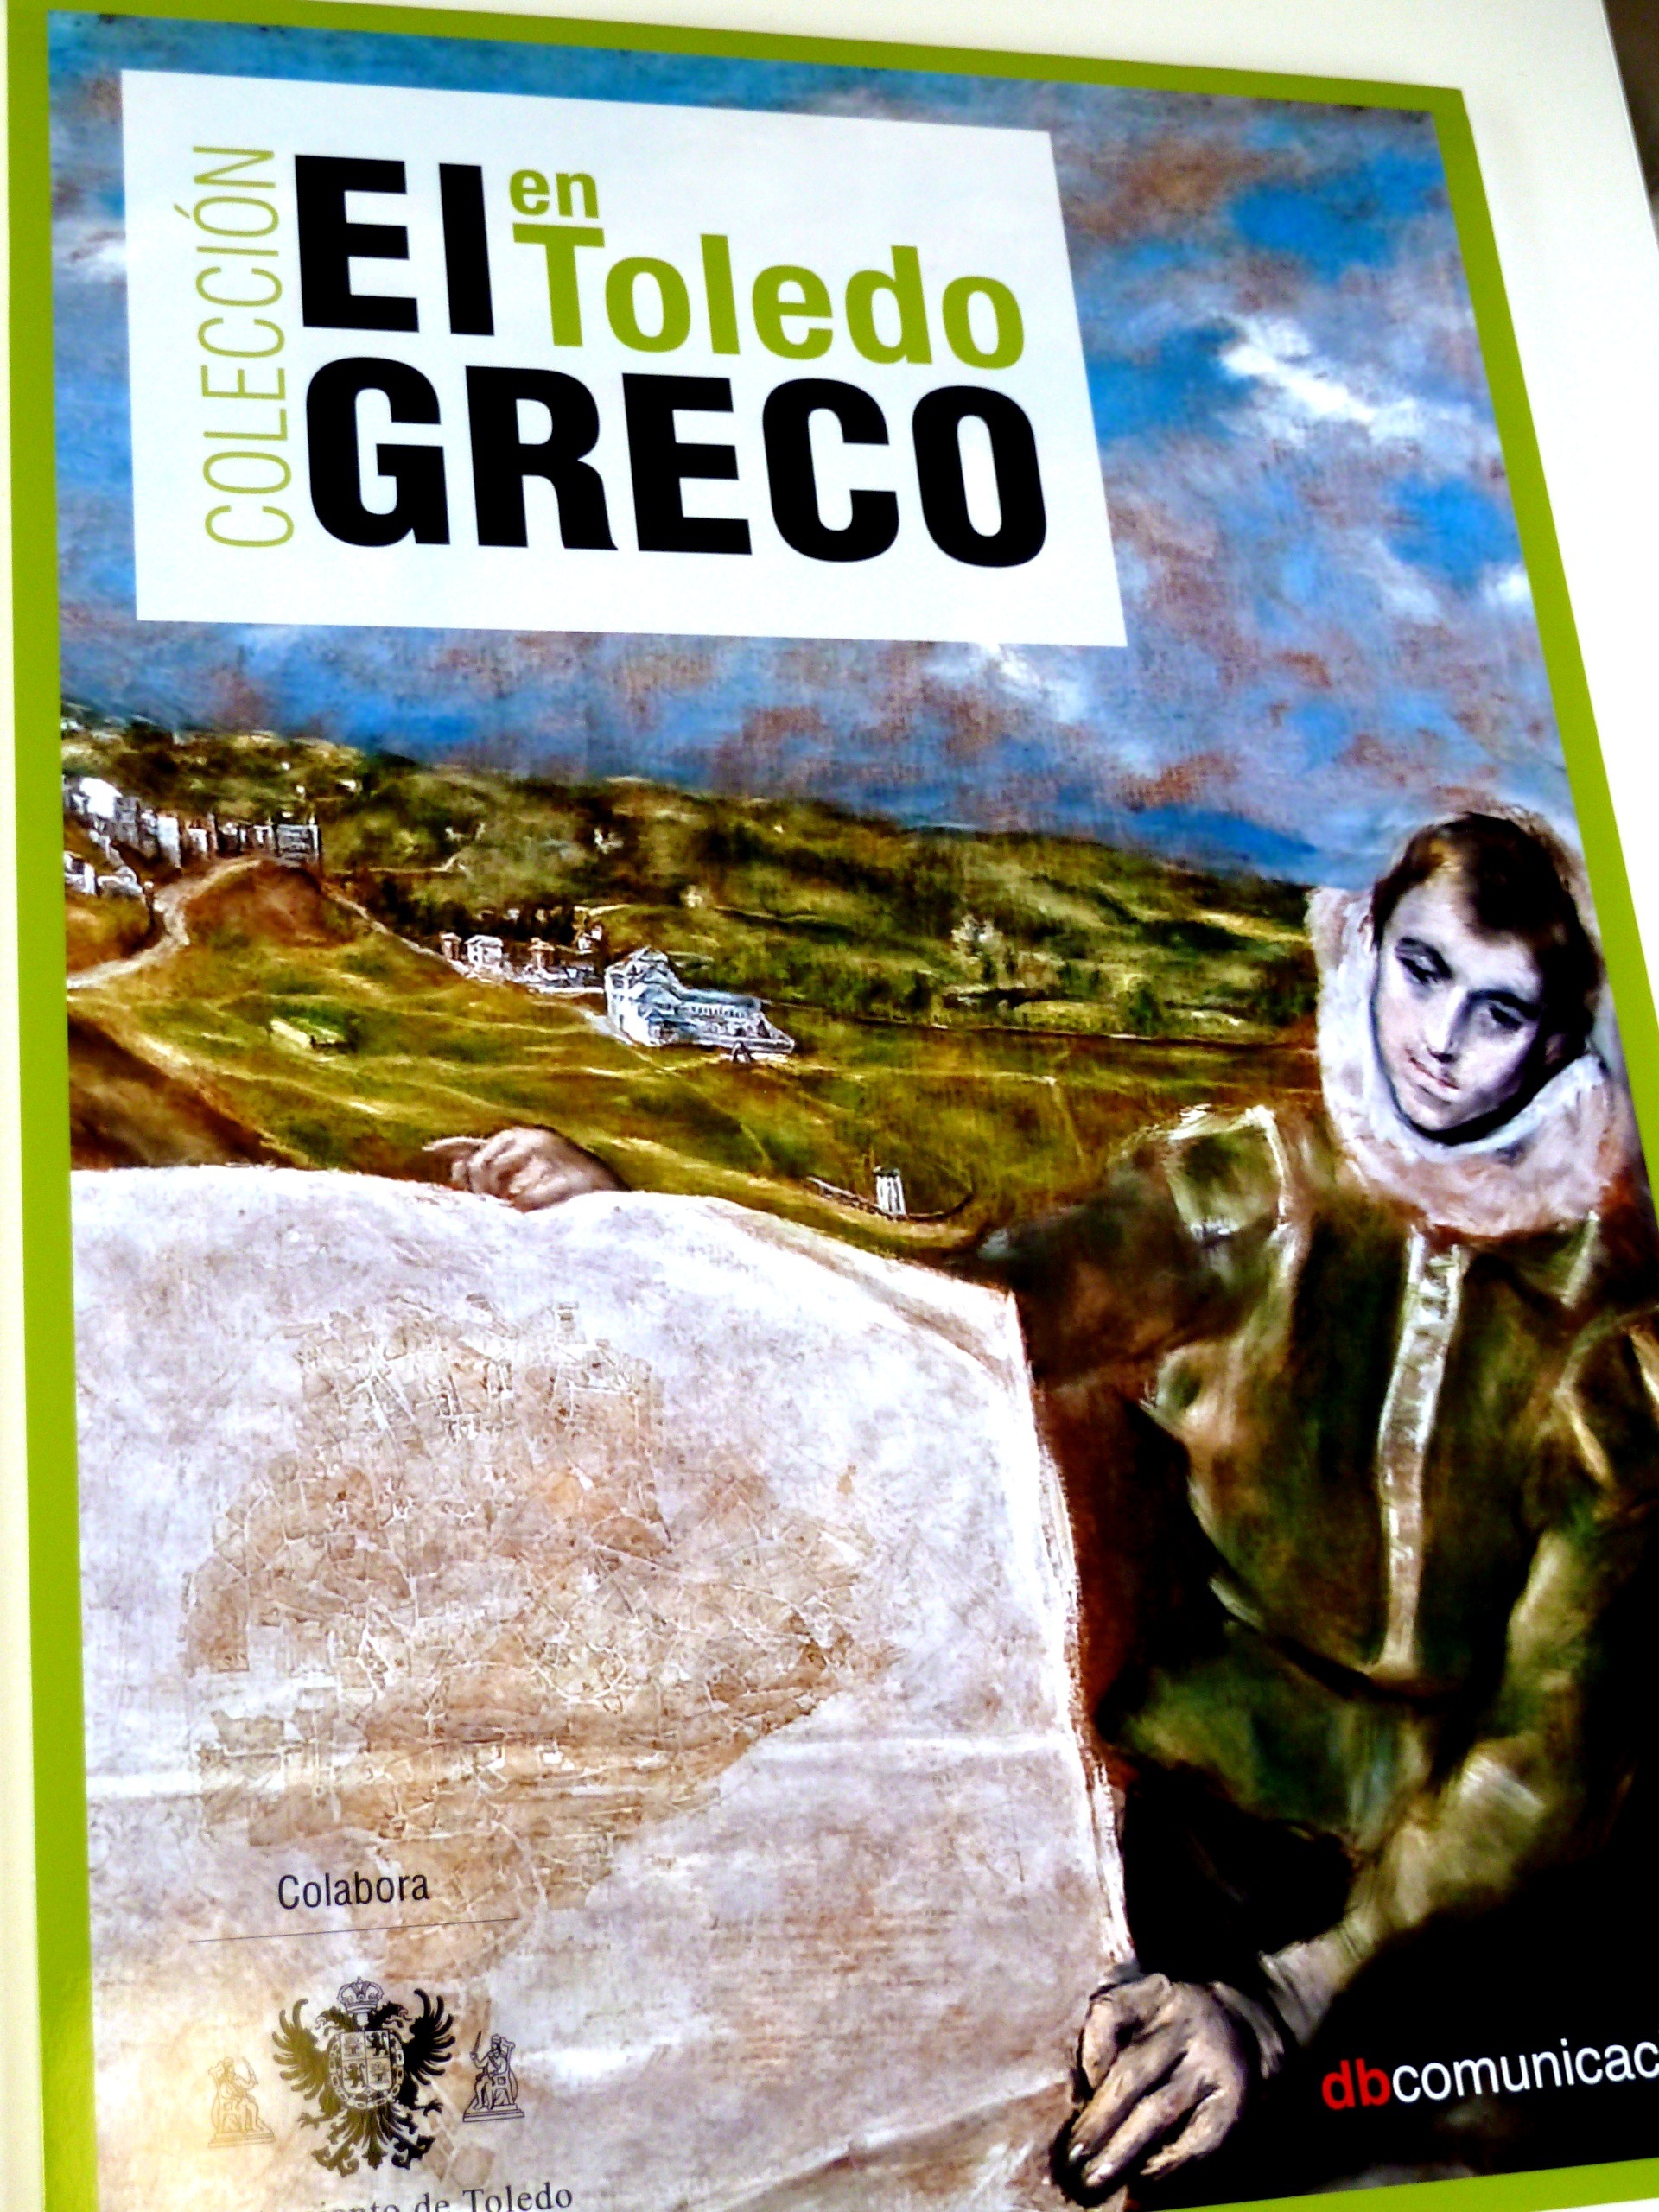 La guía »El Greco en Toledo» ayudará a los turistas «a seguir las huellas» del pintor en más de 7 espacios de la ciudad